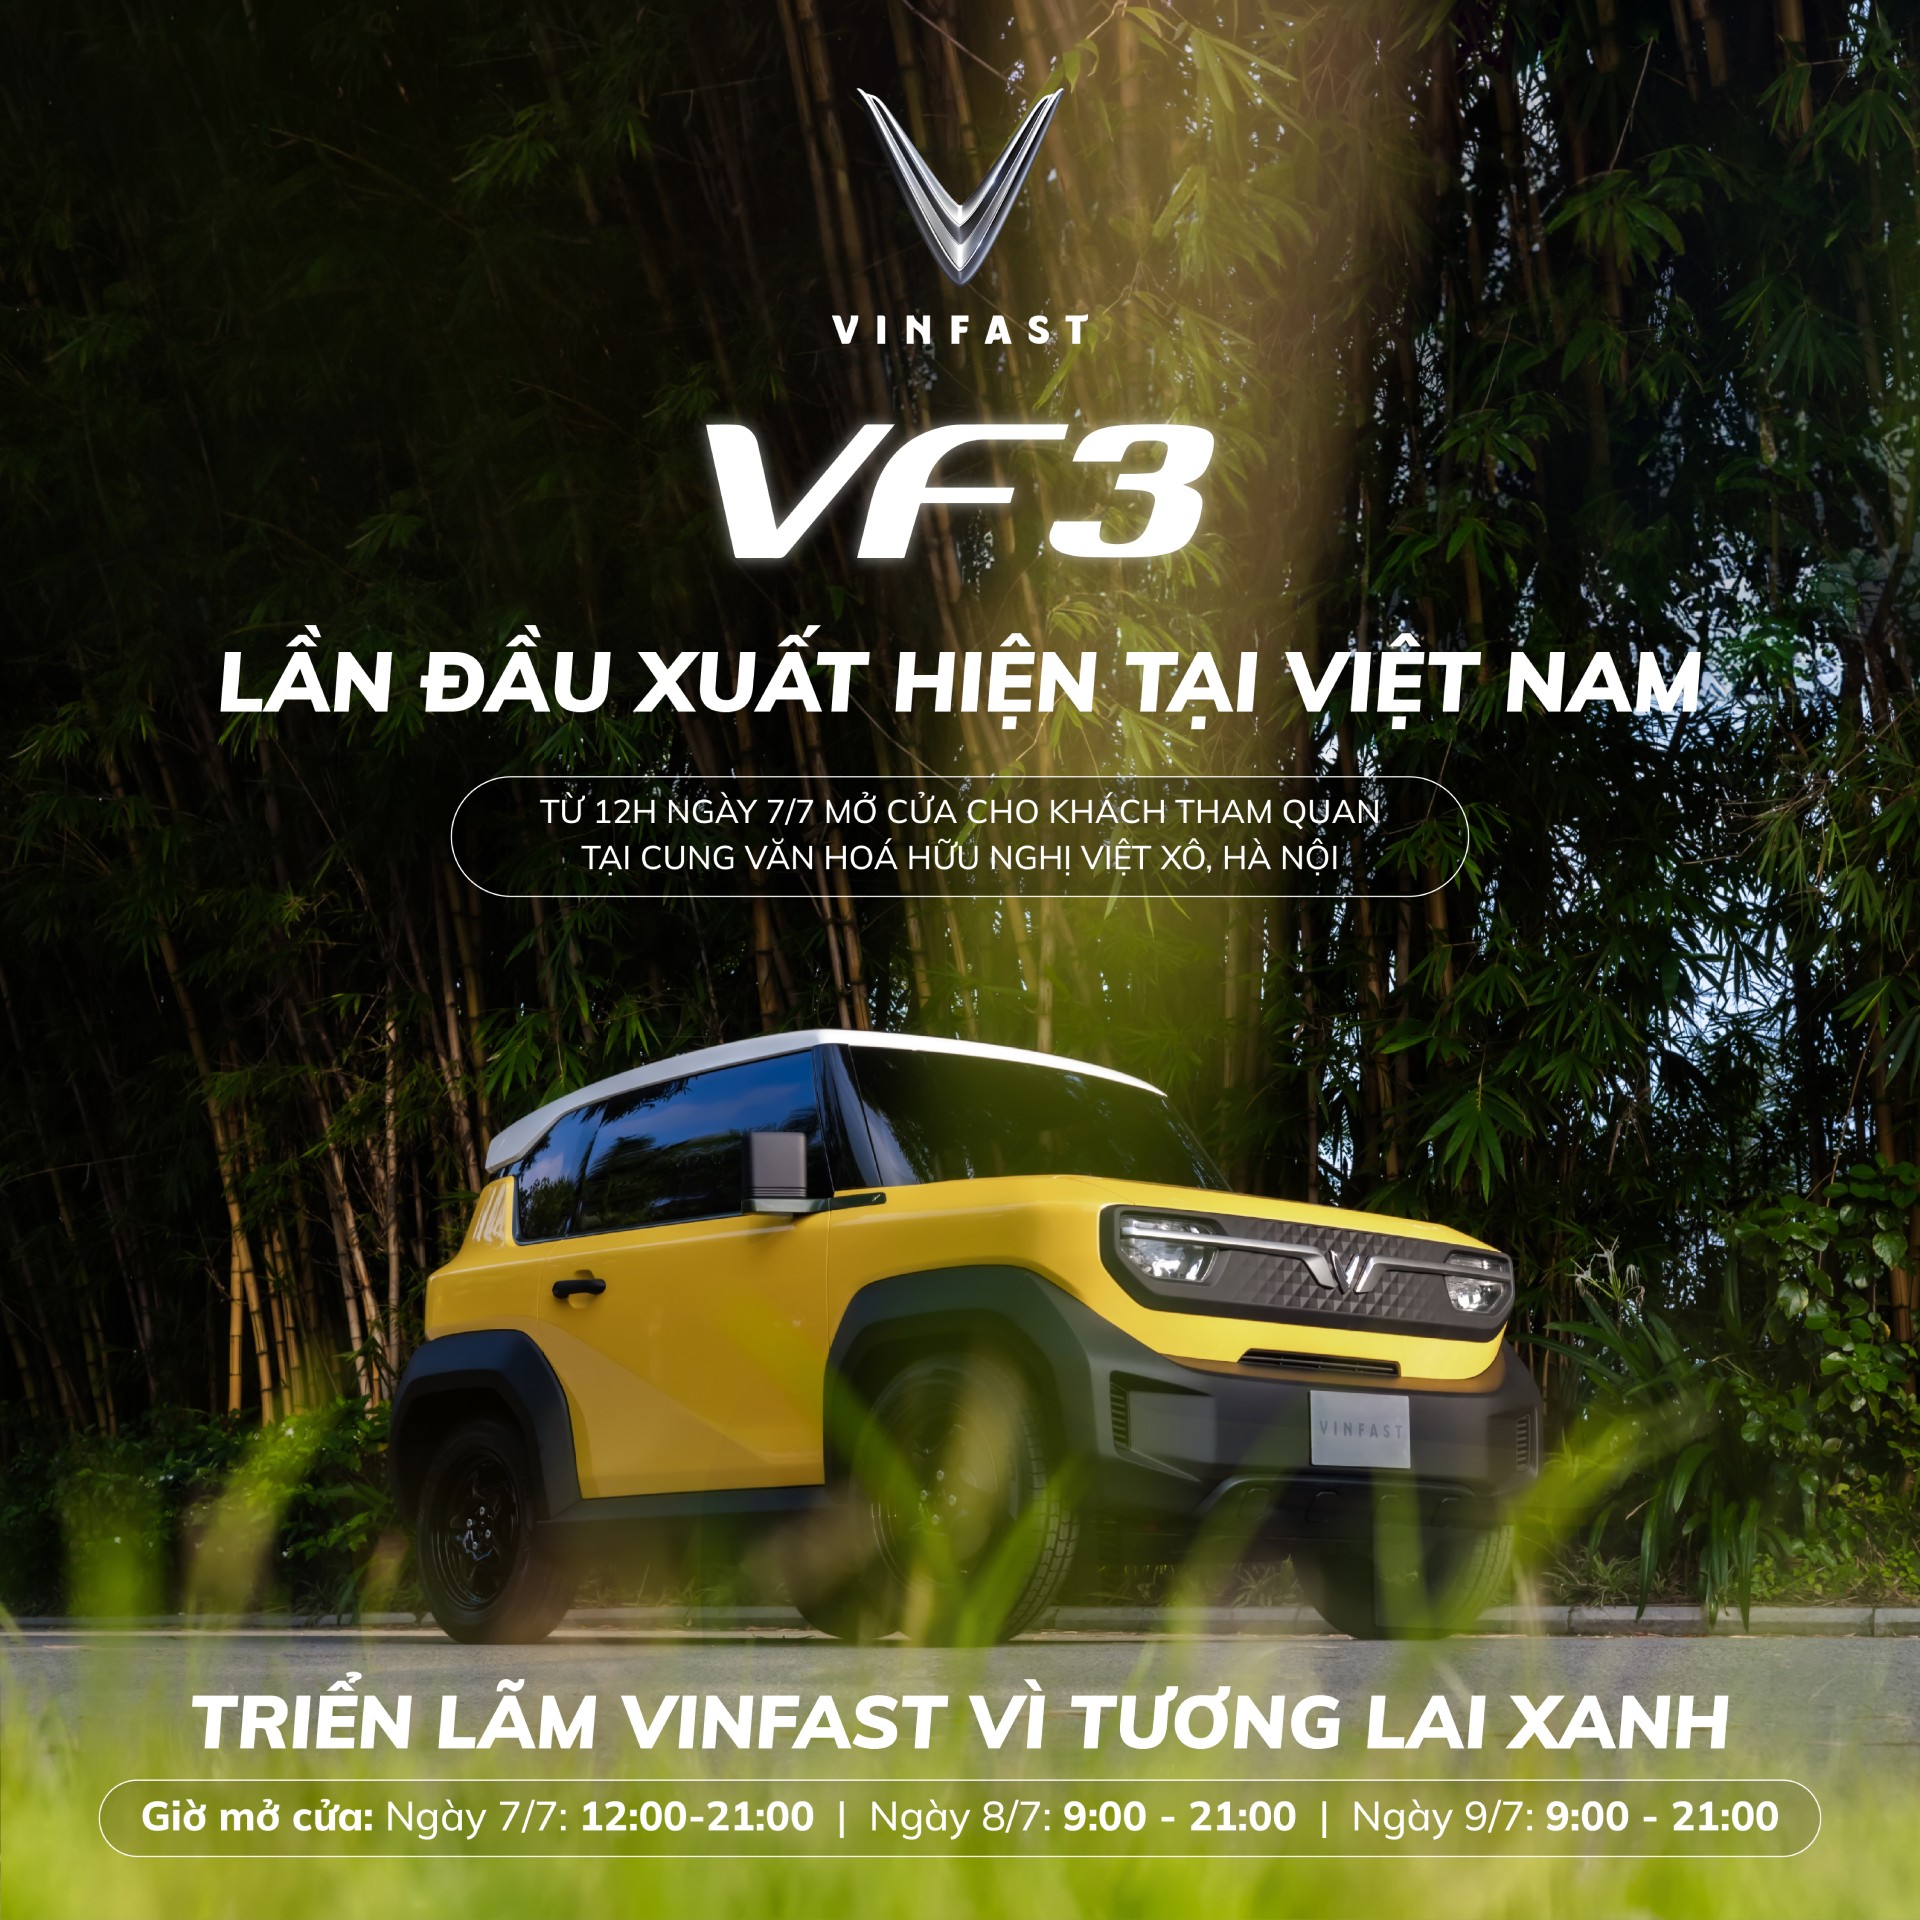 Trong đó, mẫu mini car VF 3 lần đầu tiên xuất hiện trước công chúng; VF 6, VF 7 và xe đạp trợ lực điện cũng lần đầu được trưng bày tại Việt Nam sau khi ra mắt tại các thị trường quốc tế.